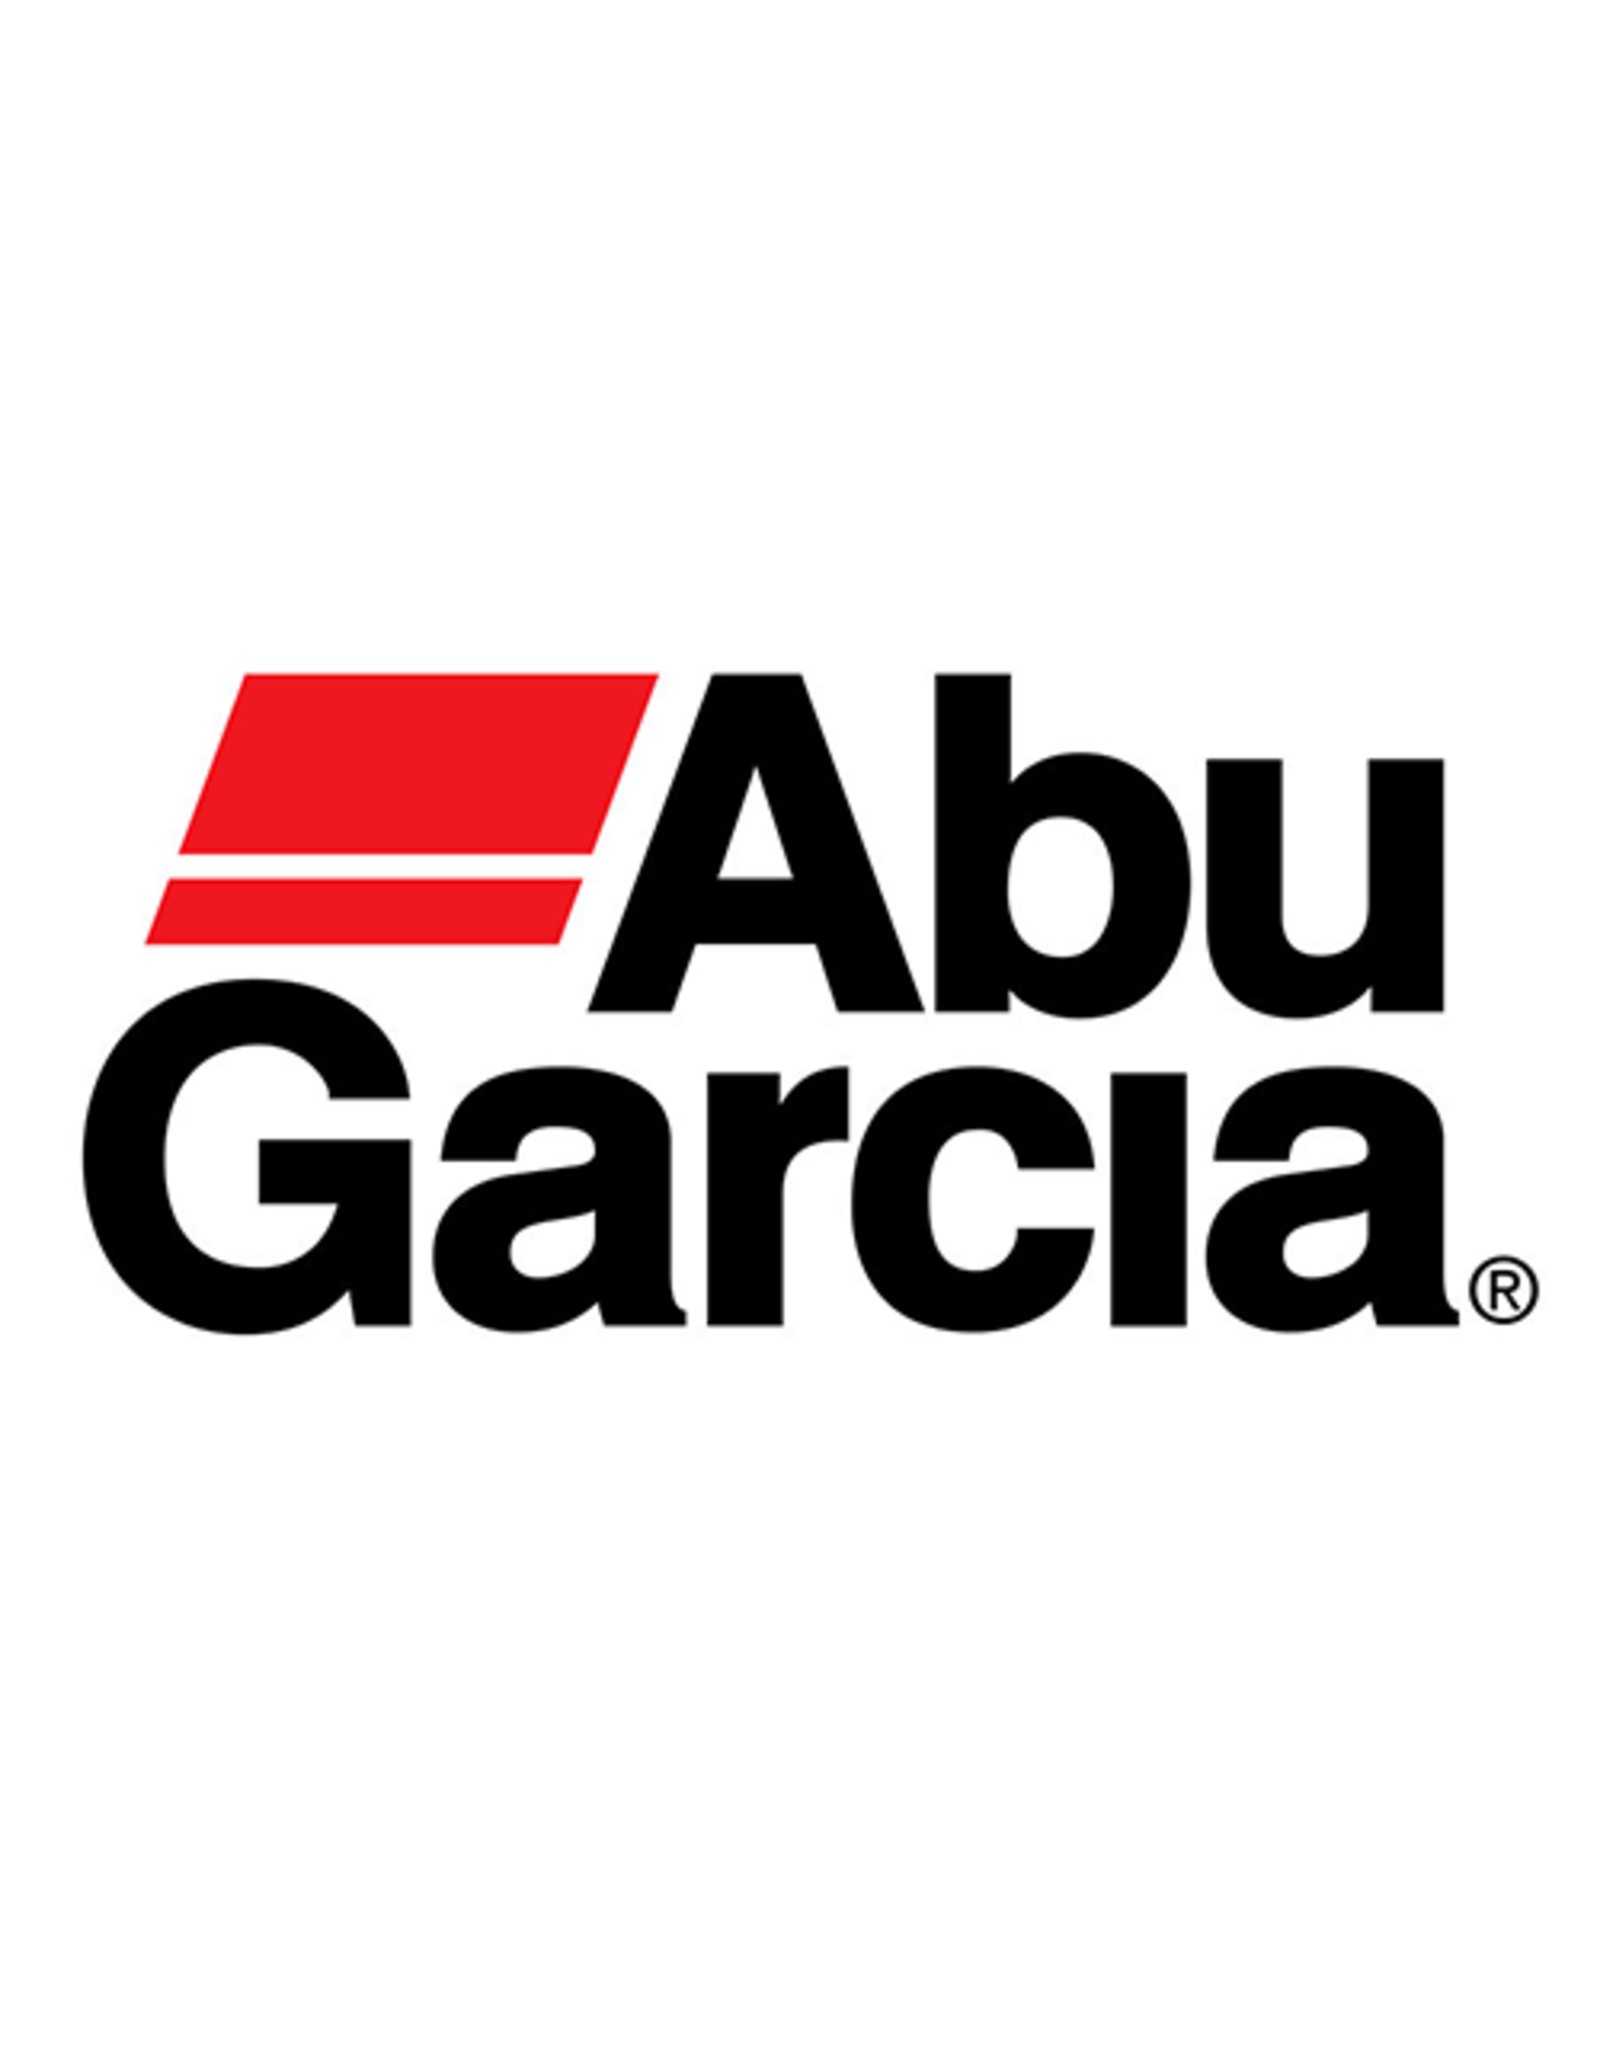 Abu Garcia 34109  LINE ROLLER/NLA